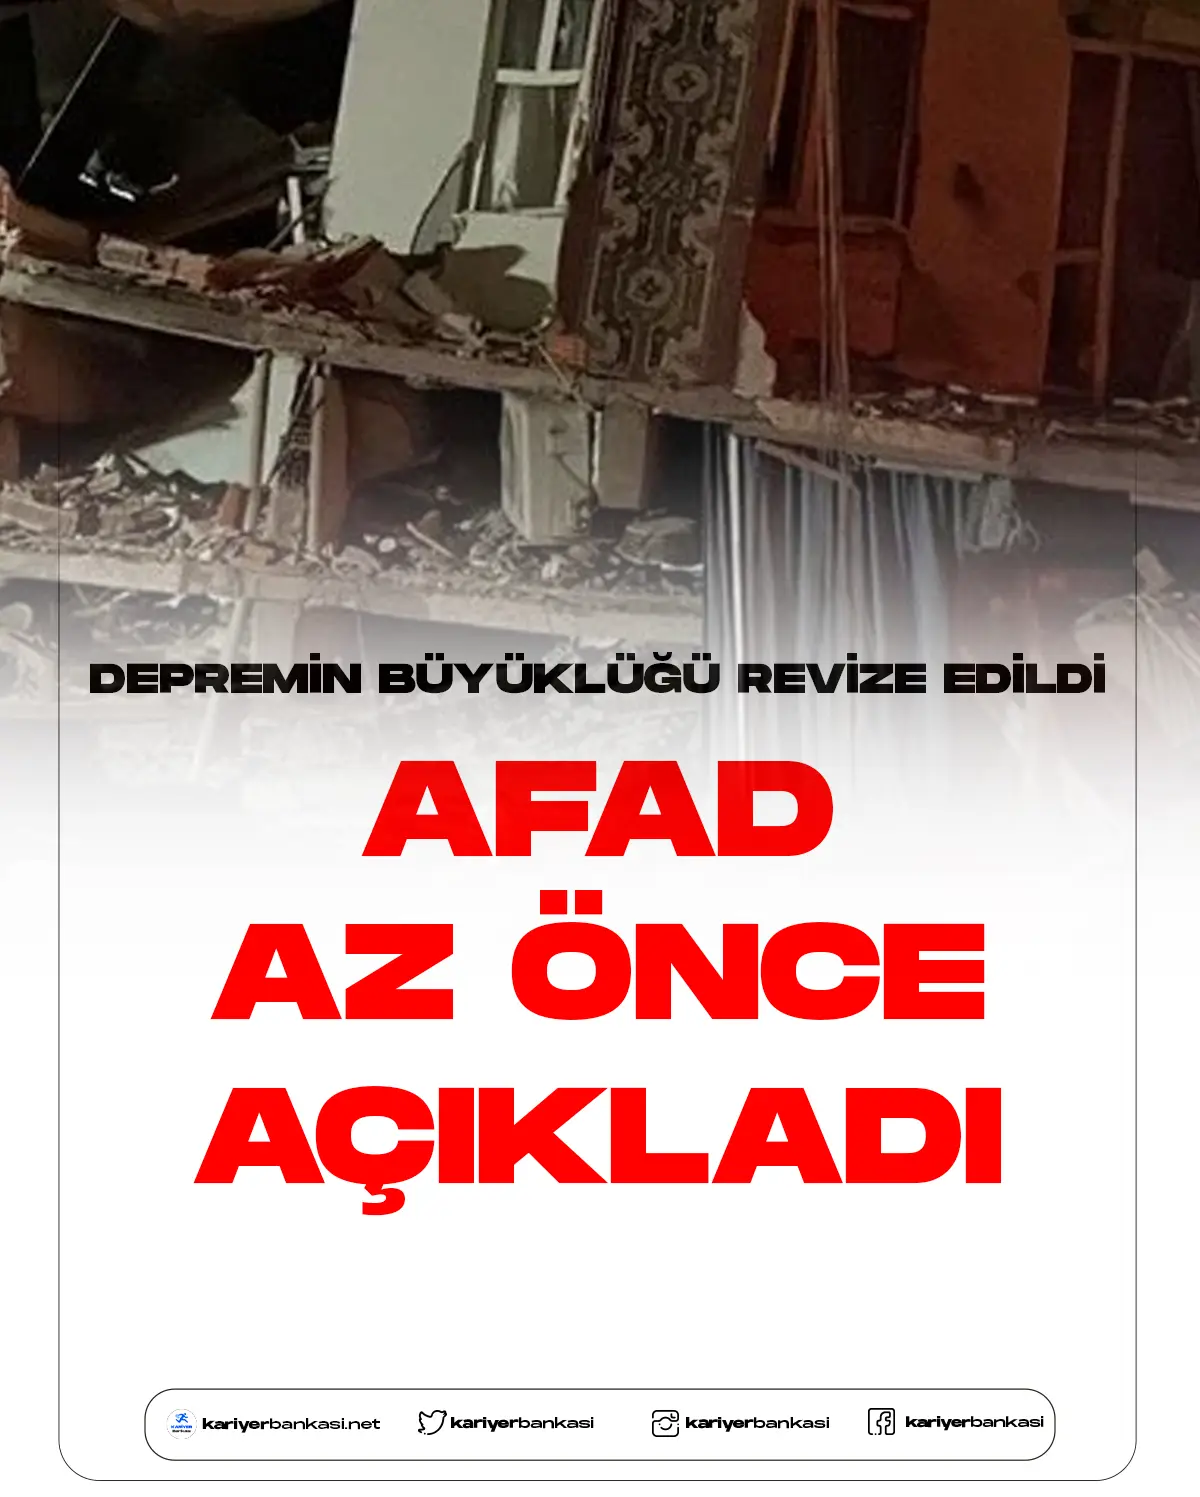 AFAD Depremin büyüklüğünü revize etti.